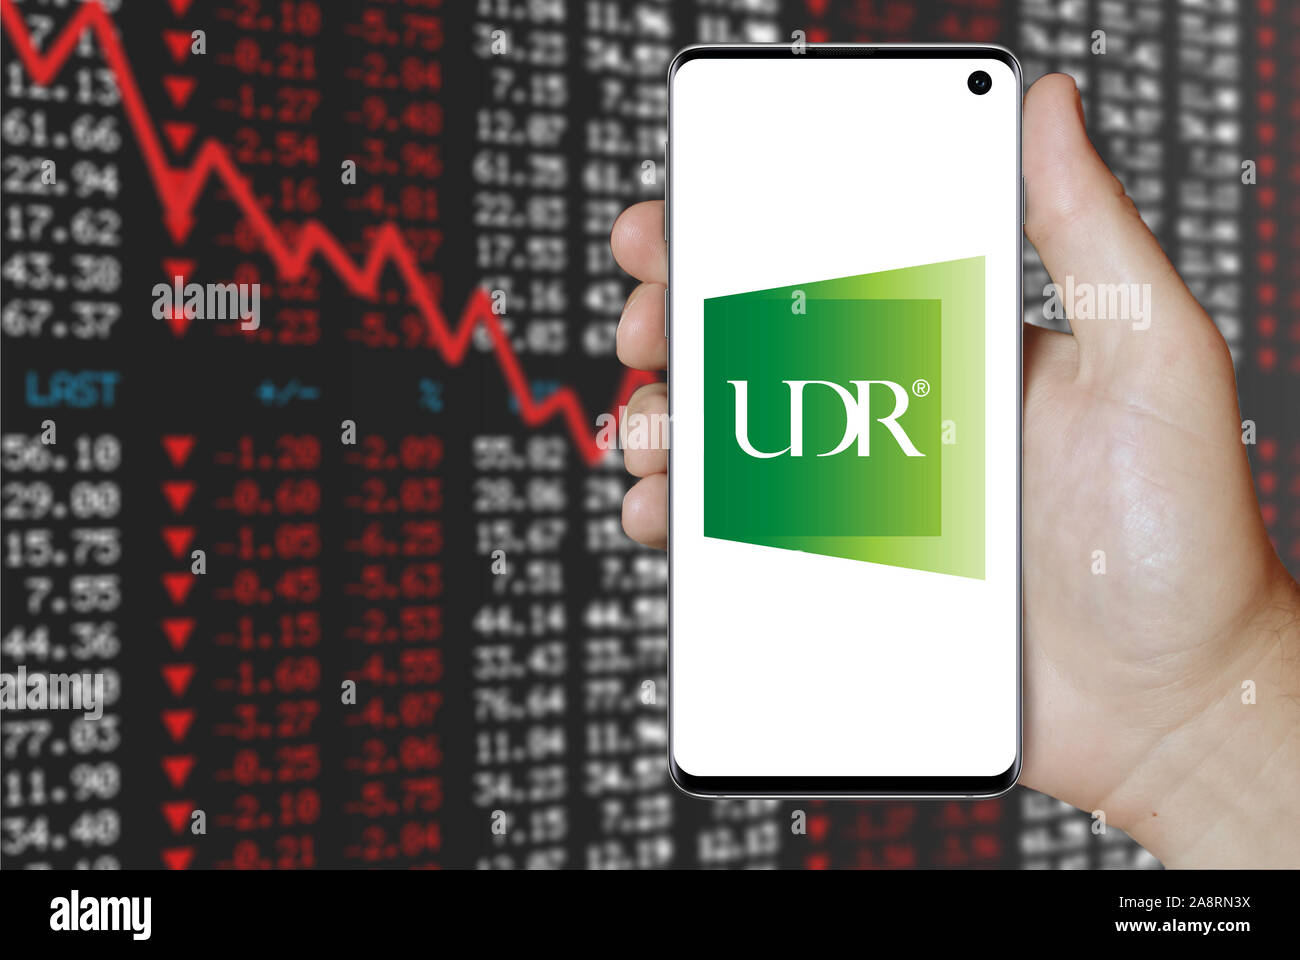 Logo de compagnie publique UDR, Inc. affiché sur un smartphone. Contexte du marché boursier négatif. Credit : PIXDUCE Banque D'Images